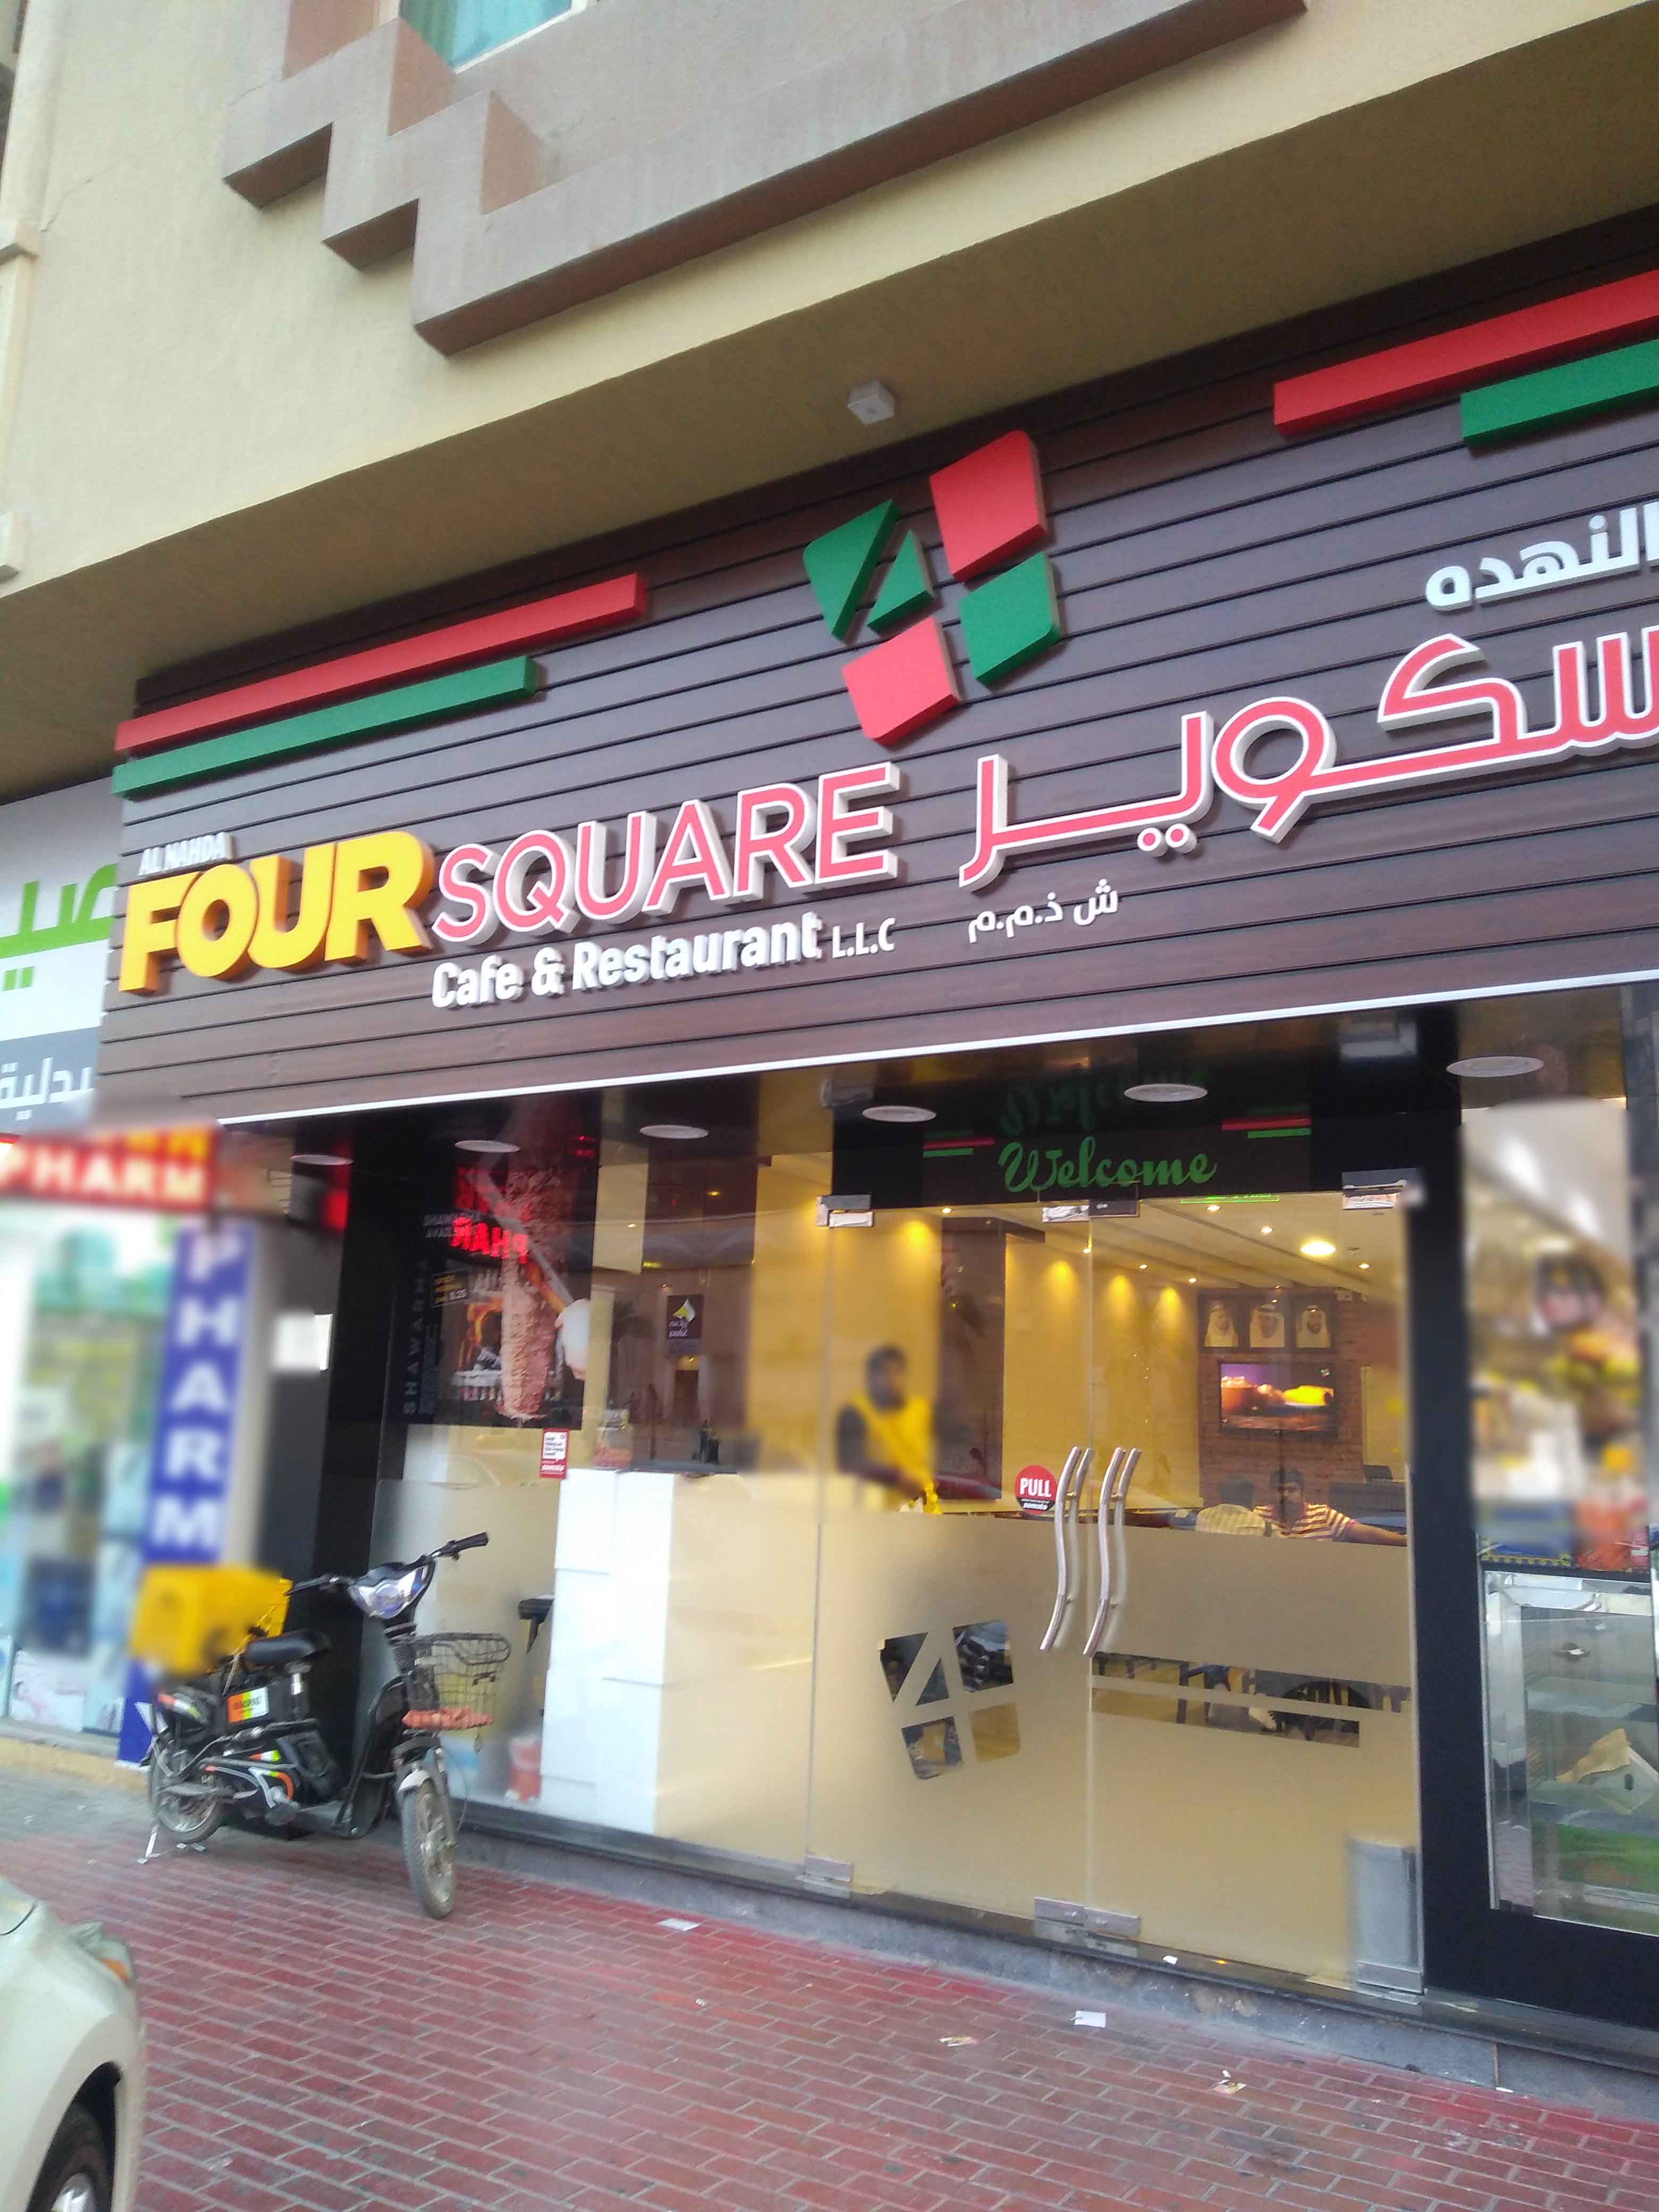 Four Square Cafe & Restaurant